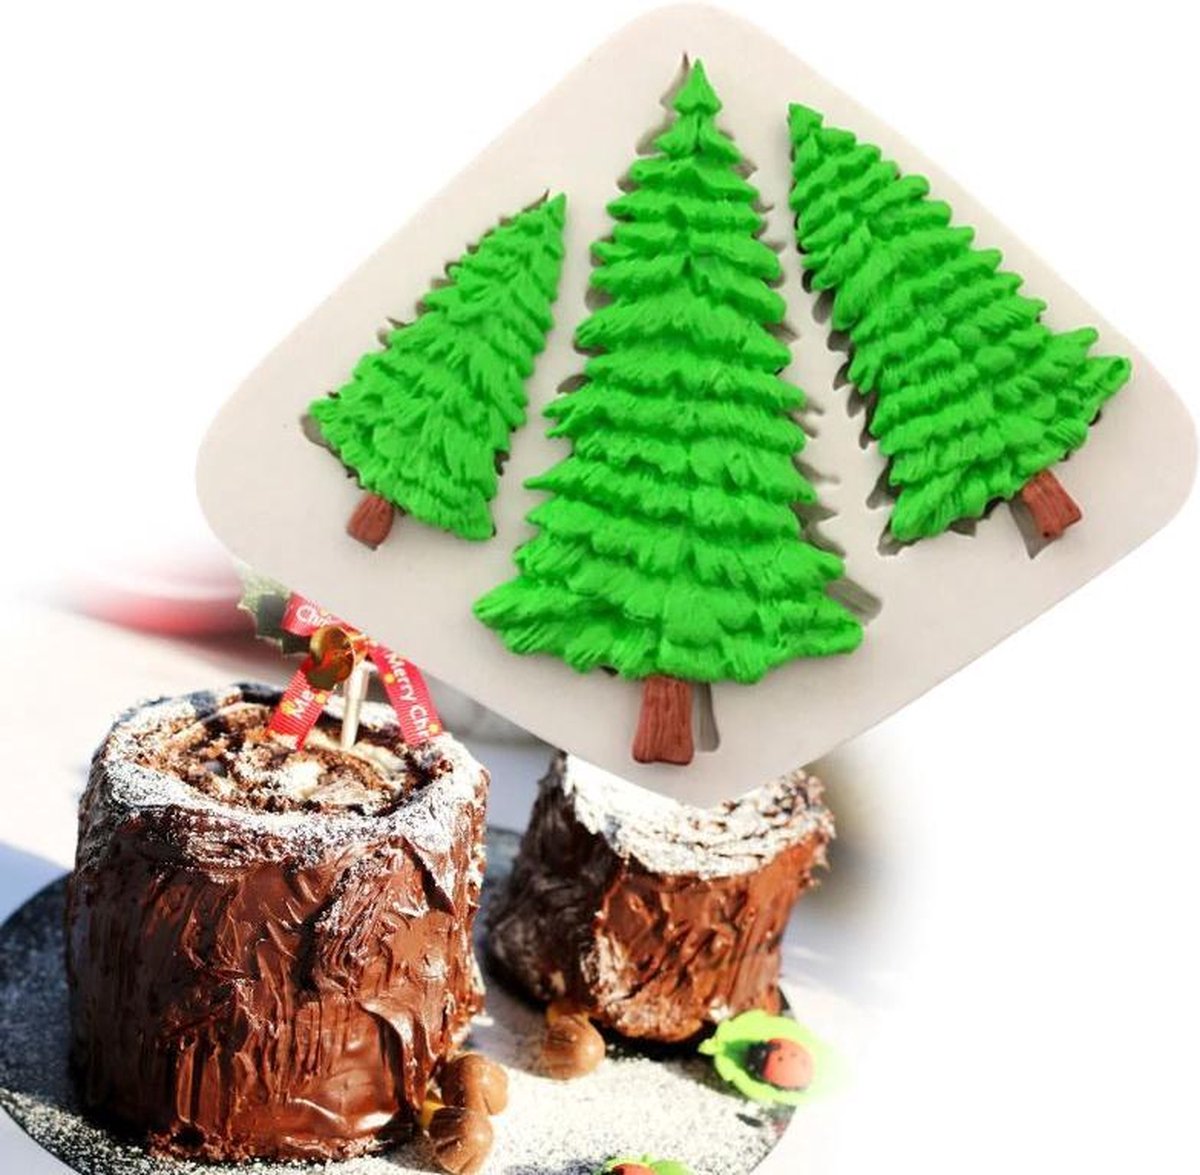 Fondant Kerstbomen Mal - Siliconen Kerst versiering vorm - Kerstboom Fondant / Marsepein / Chocolade / Zeep - Voor Kerstmis decoratie van taart, cupcakes en cake